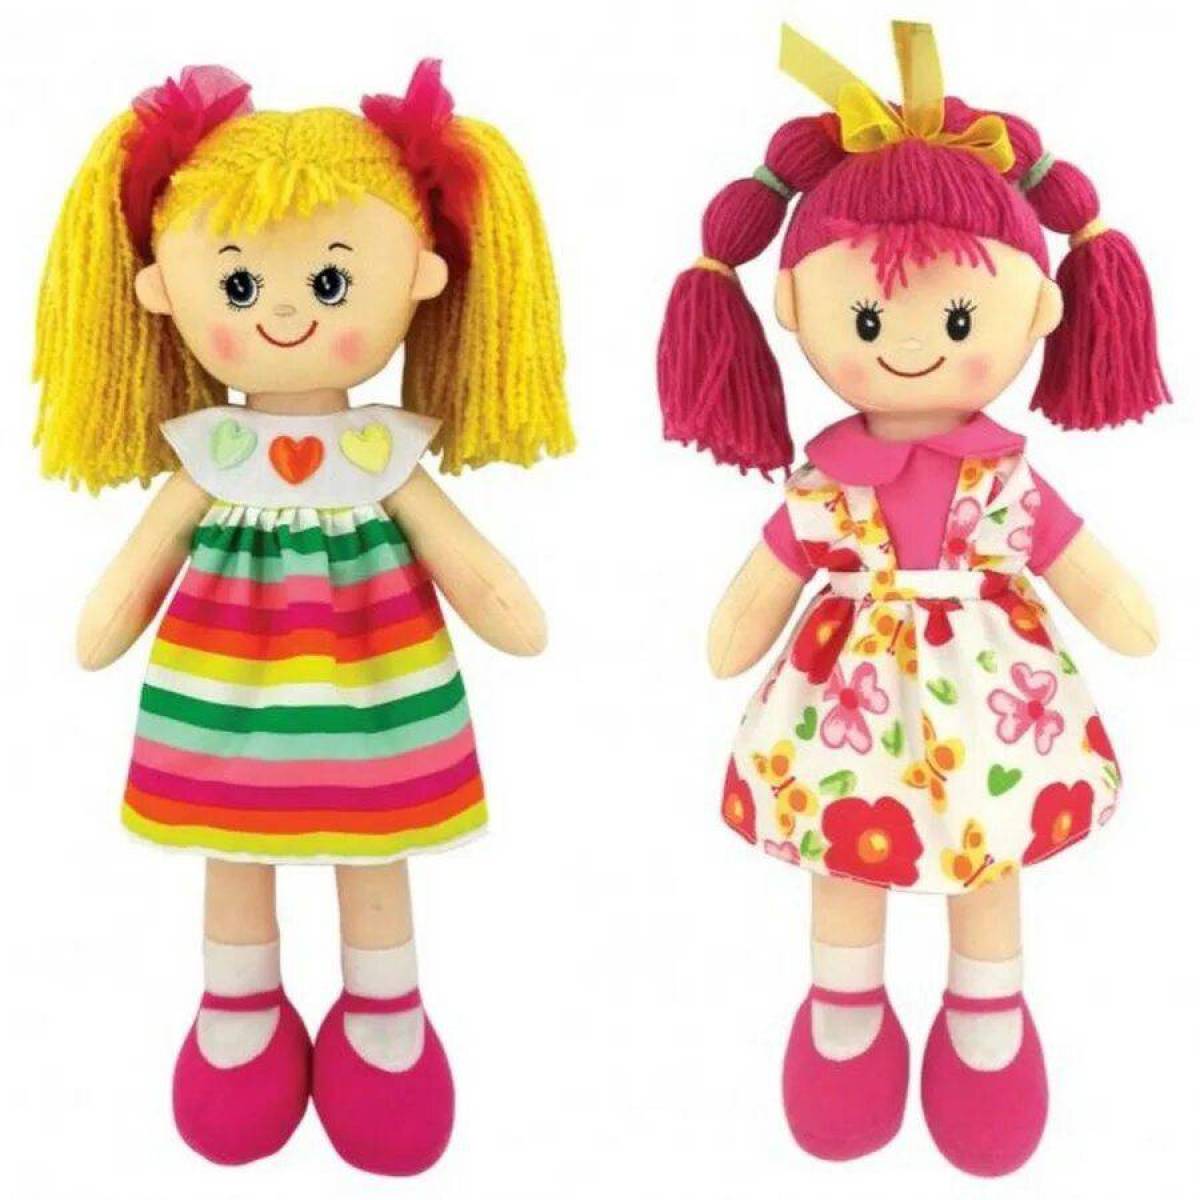 Подарок игрушка кукла. Игрушки и куклы. Куклы для детей. Куклы для девочек. Игрушки для девочек куклы.